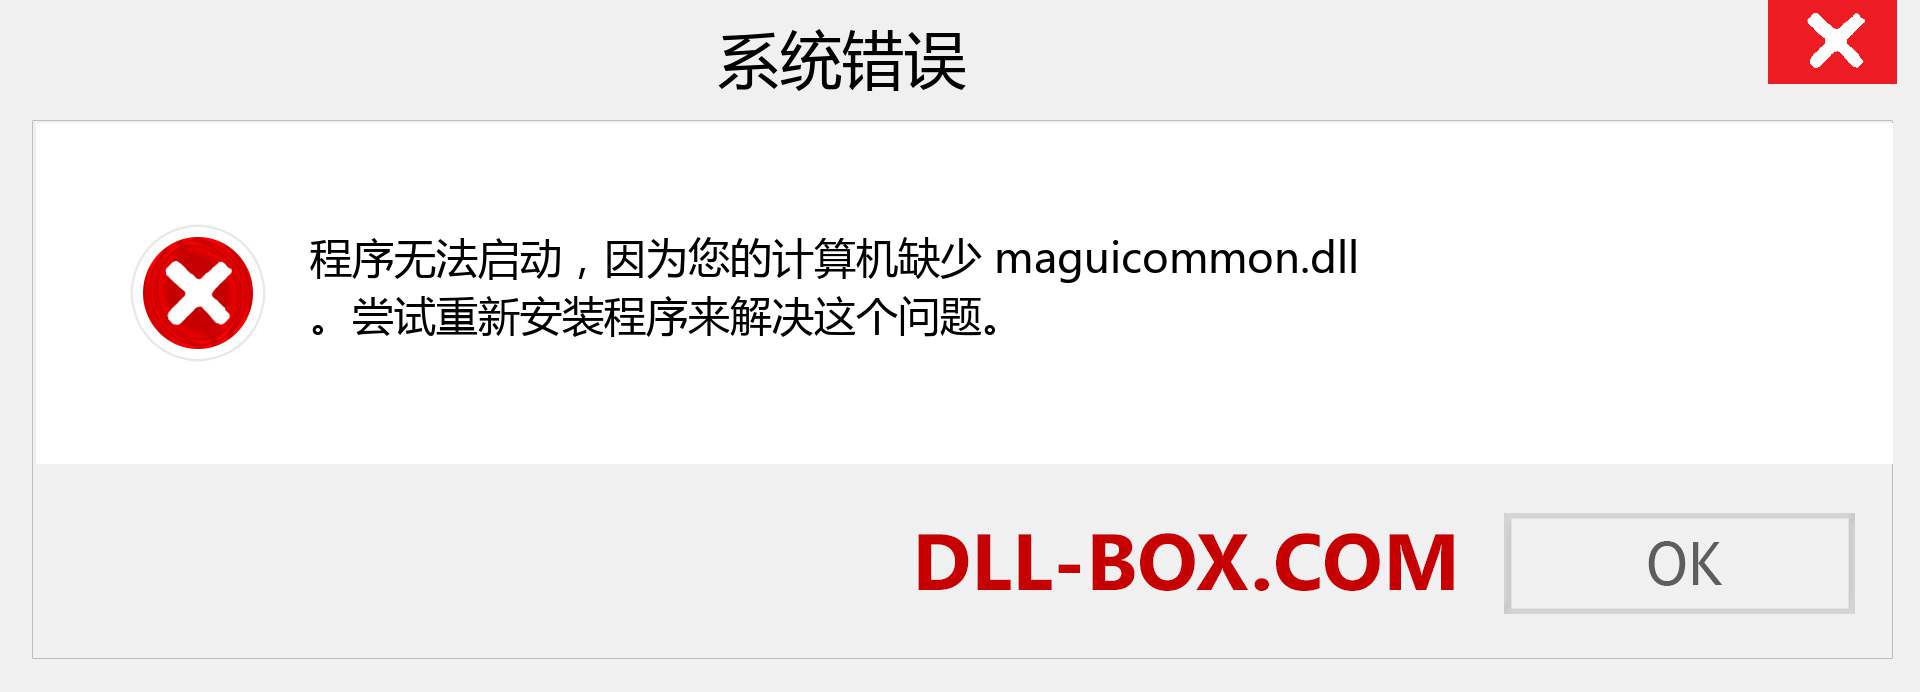 maguicommon.dll 文件丢失？。 适用于 Windows 7、8、10 的下载 - 修复 Windows、照片、图像上的 maguicommon dll 丢失错误